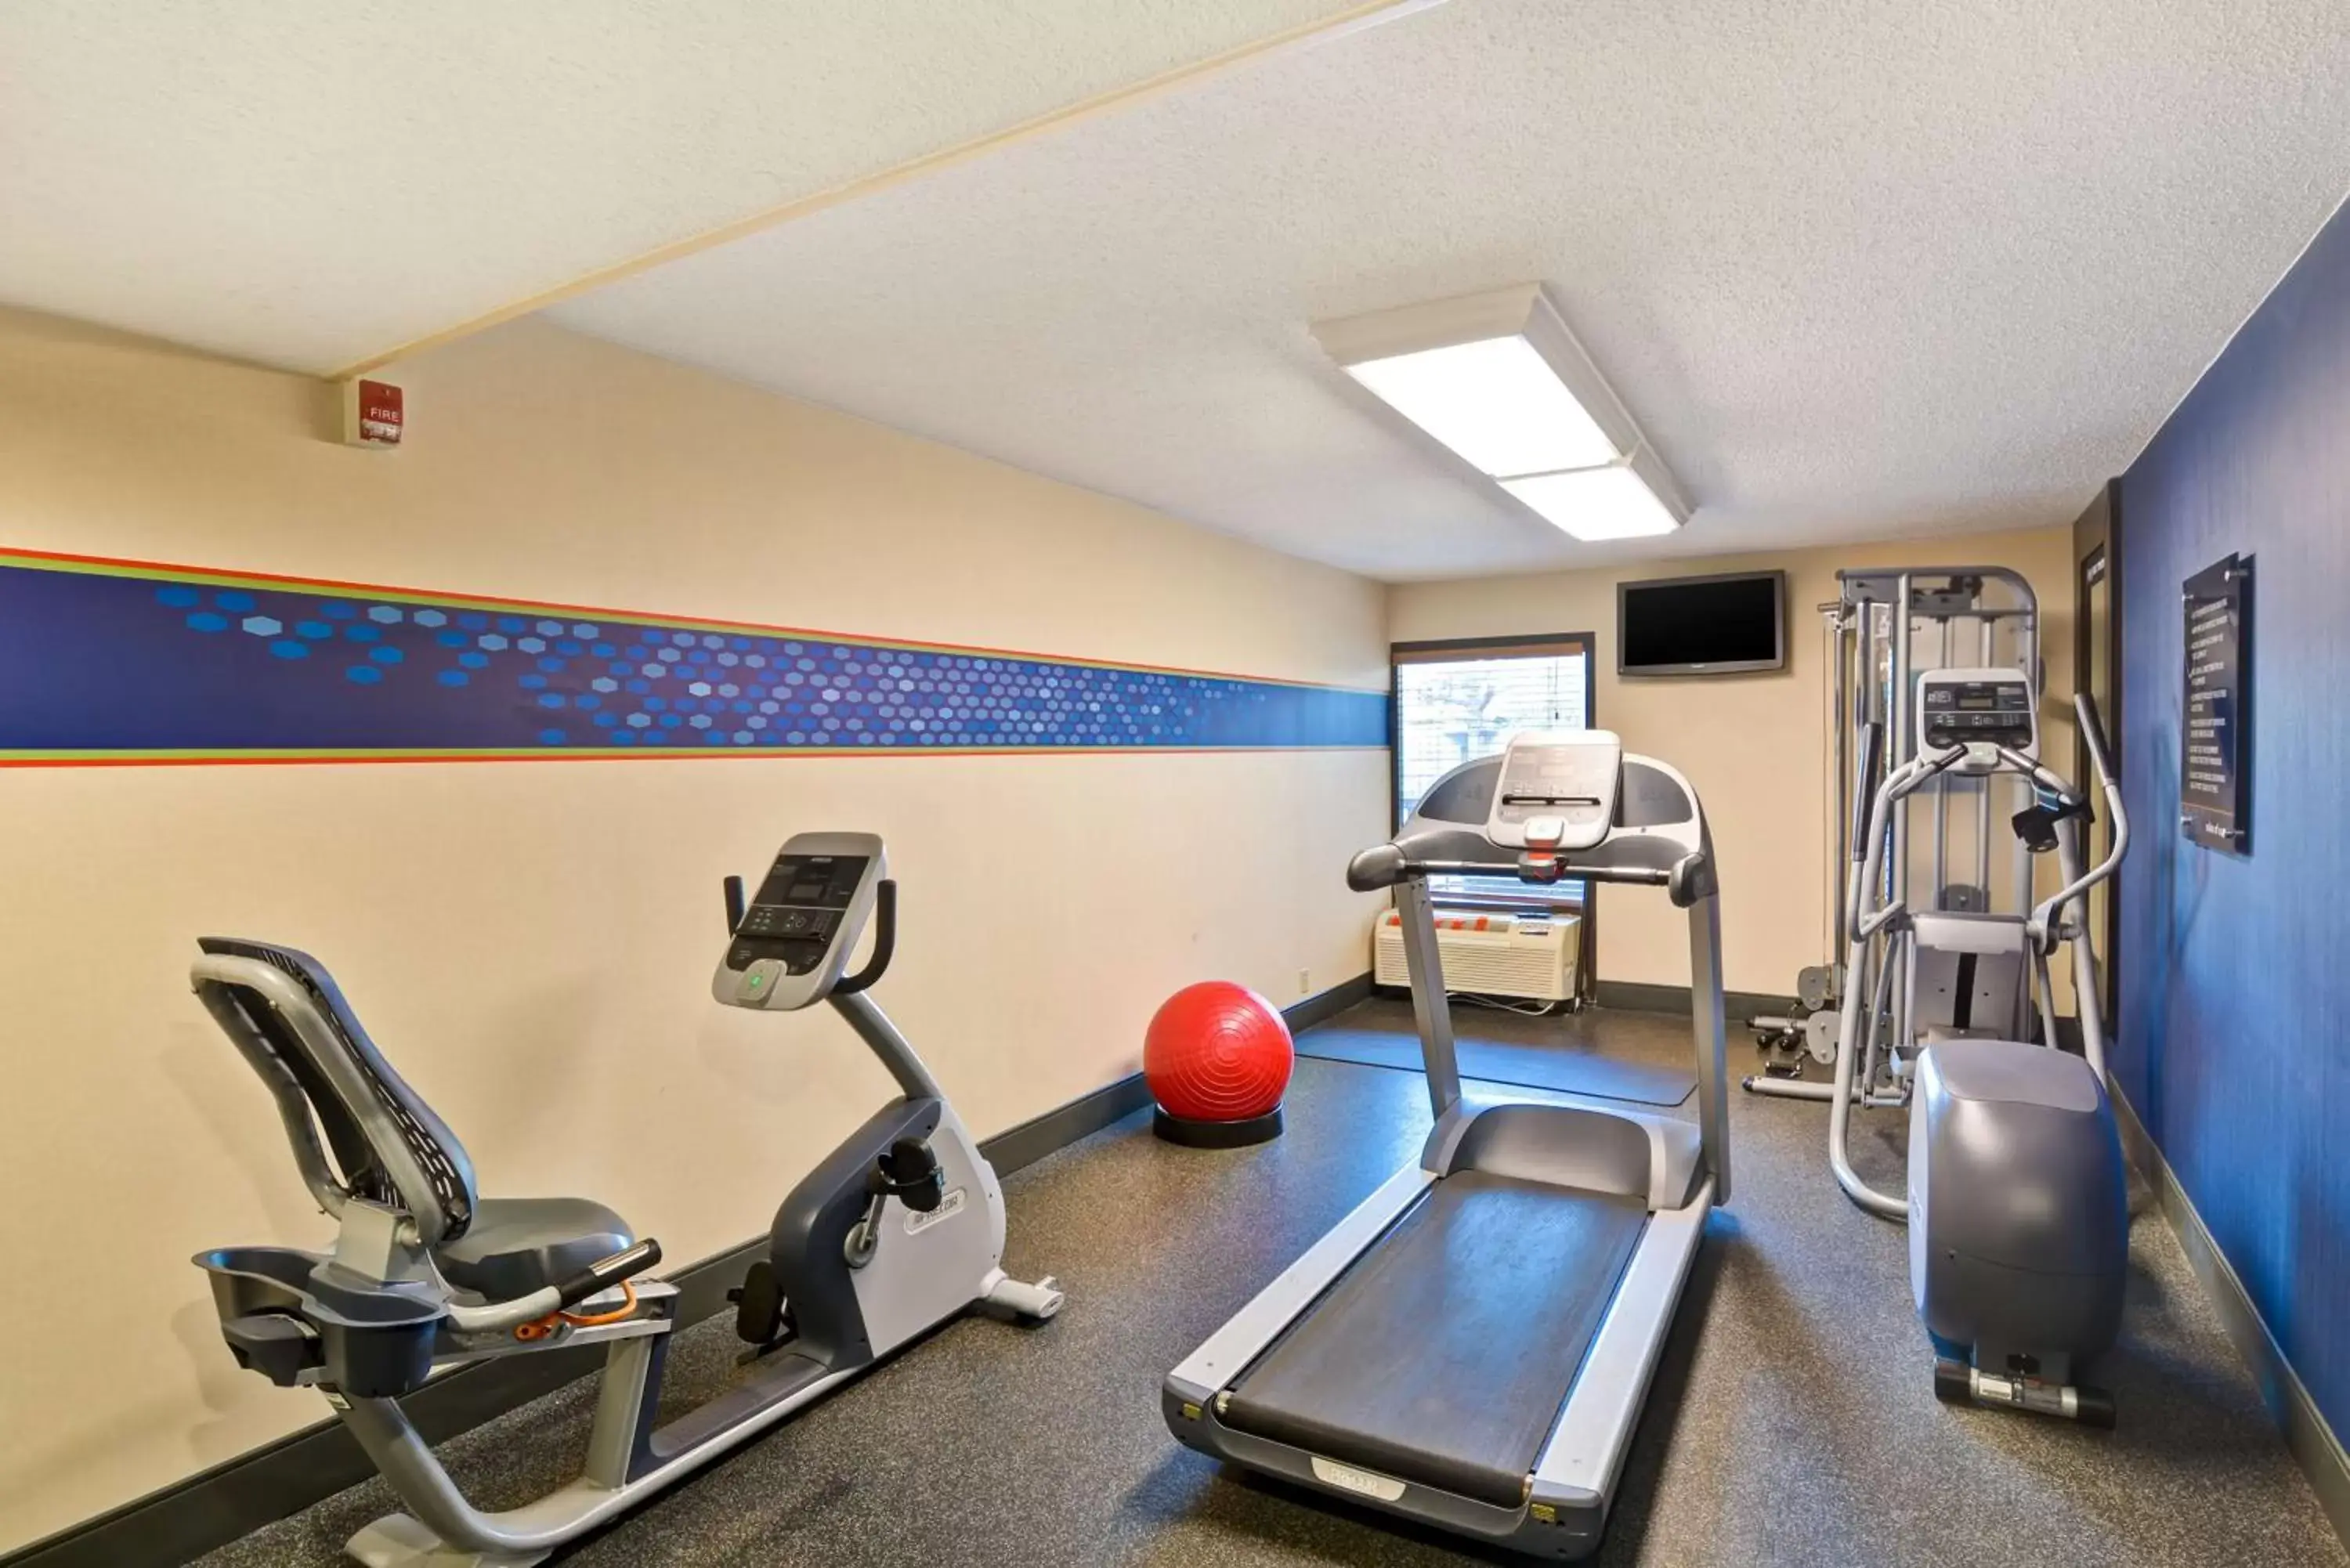 Fitness centre/facilities, Fitness Center/Facilities in Hampton Inn Memphis Poplar